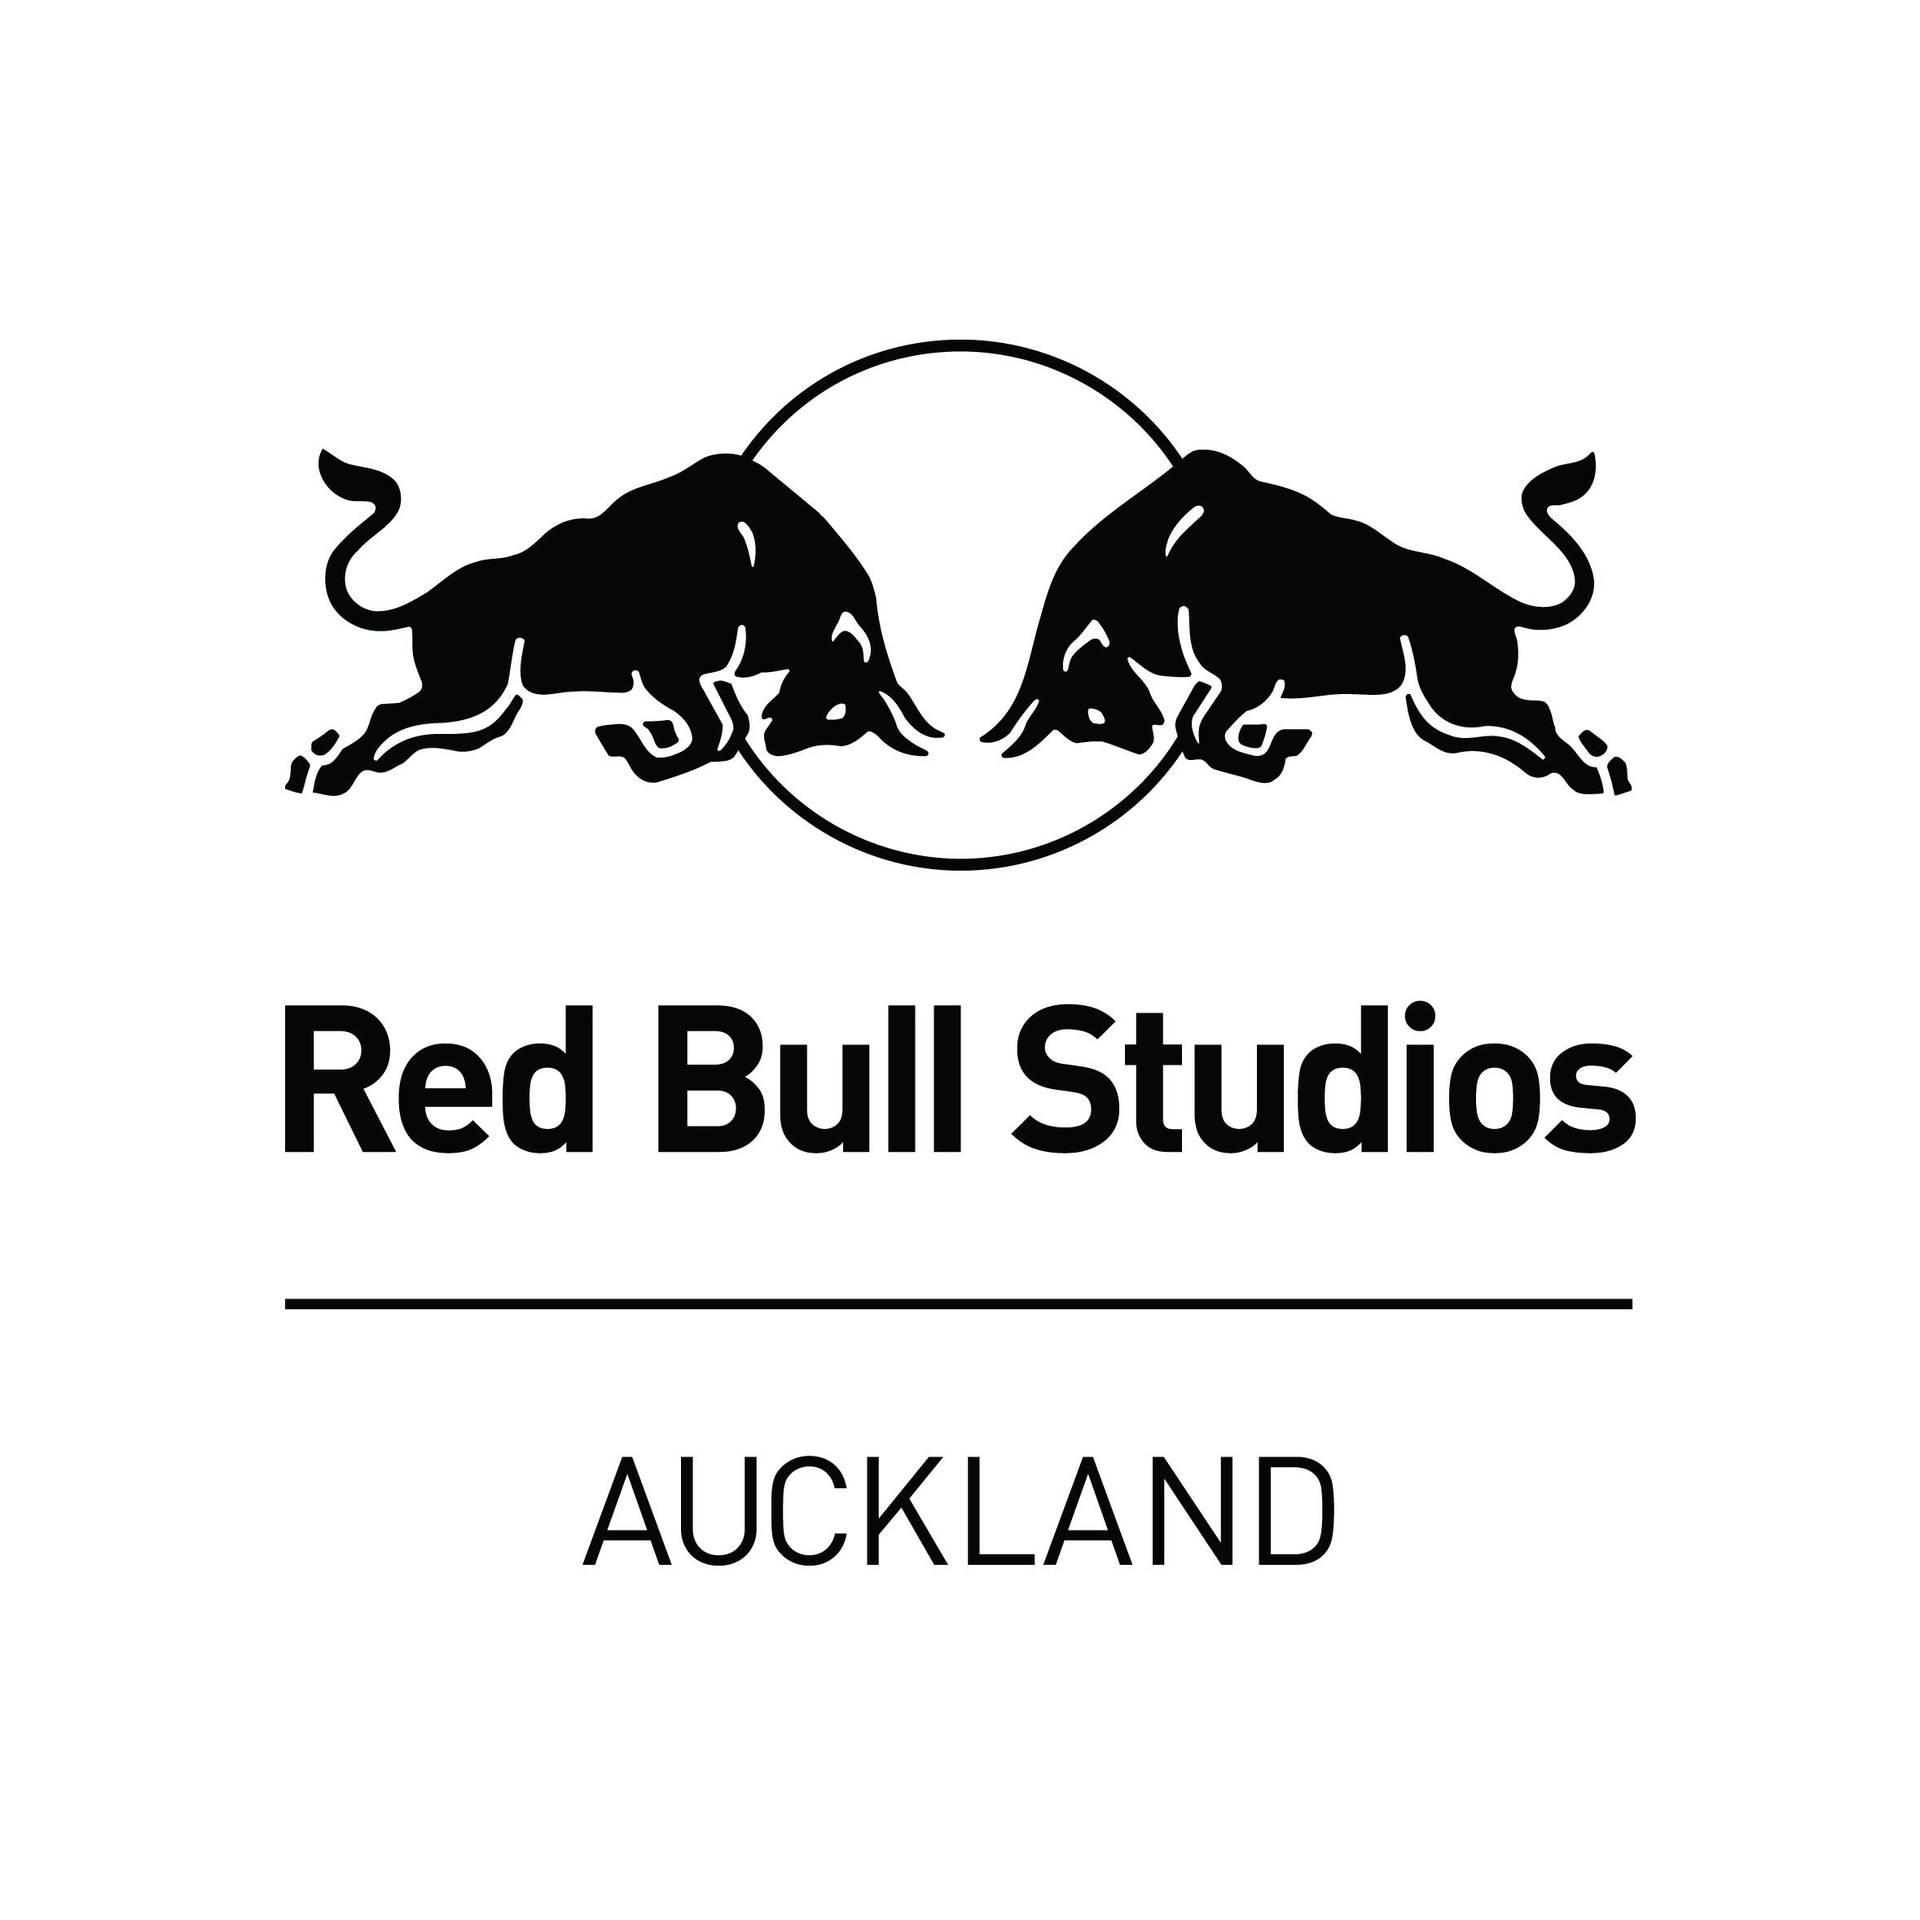 Black White and Red Bull Logo - Red Bull Studios Auckland | Red Bull Studios Auckland